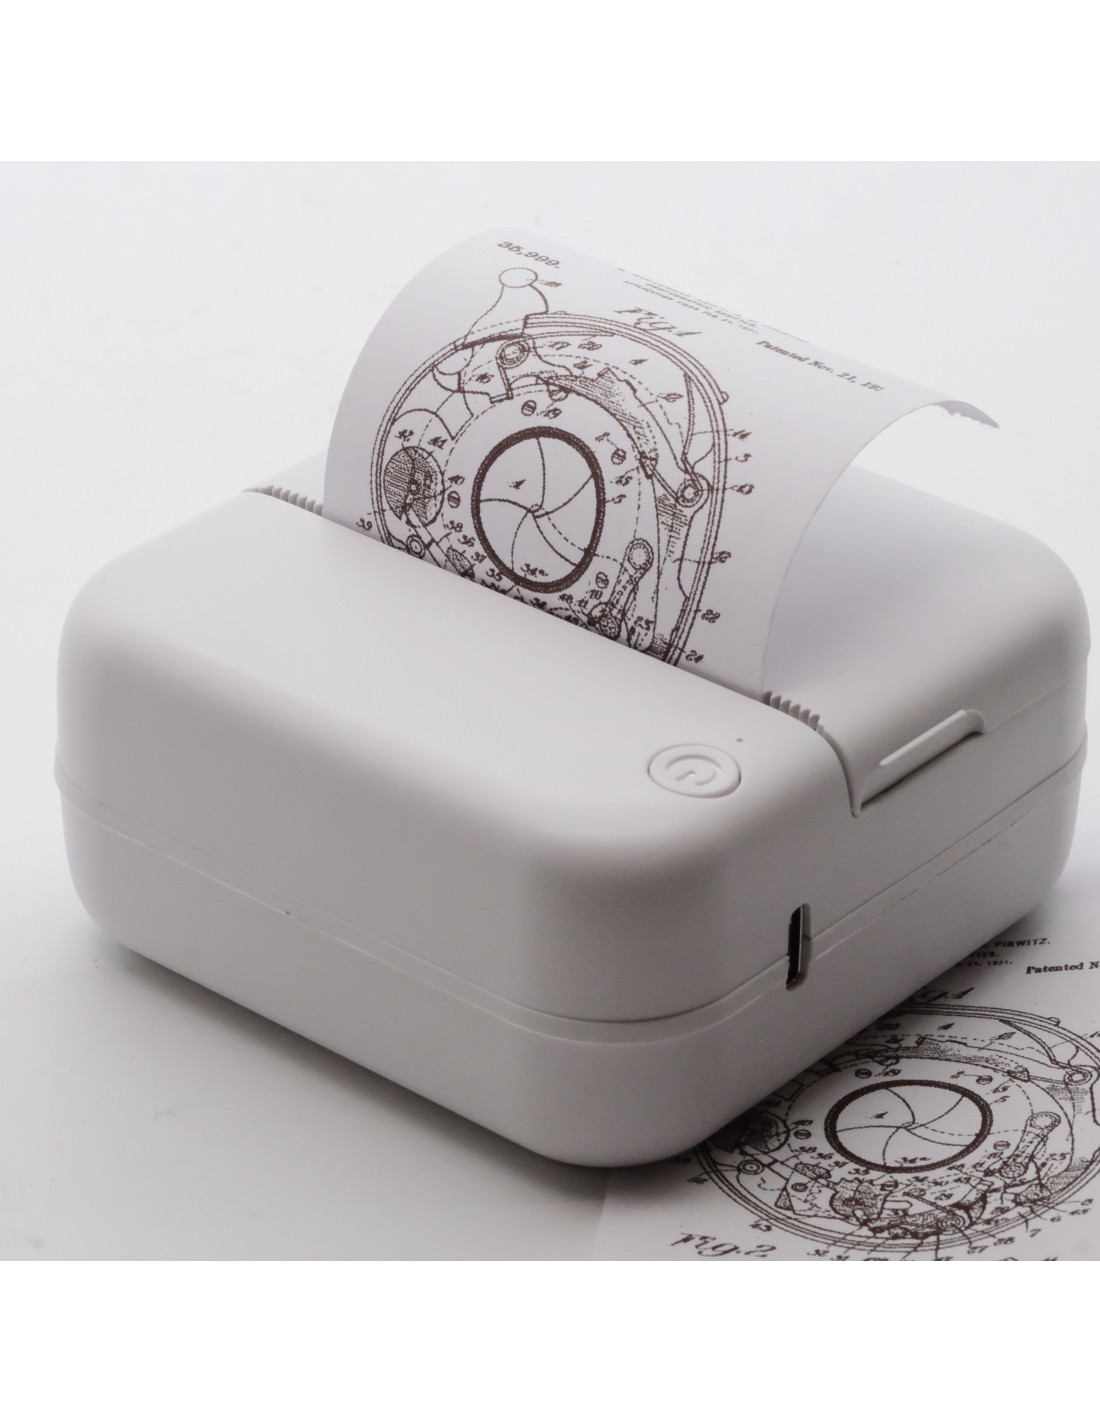 Sanpyl Mini impresora, impresora térmica sin tinta de resolución de 200  DPI, impresora portátil ergonómica y ligera para regalo de viaje en casa